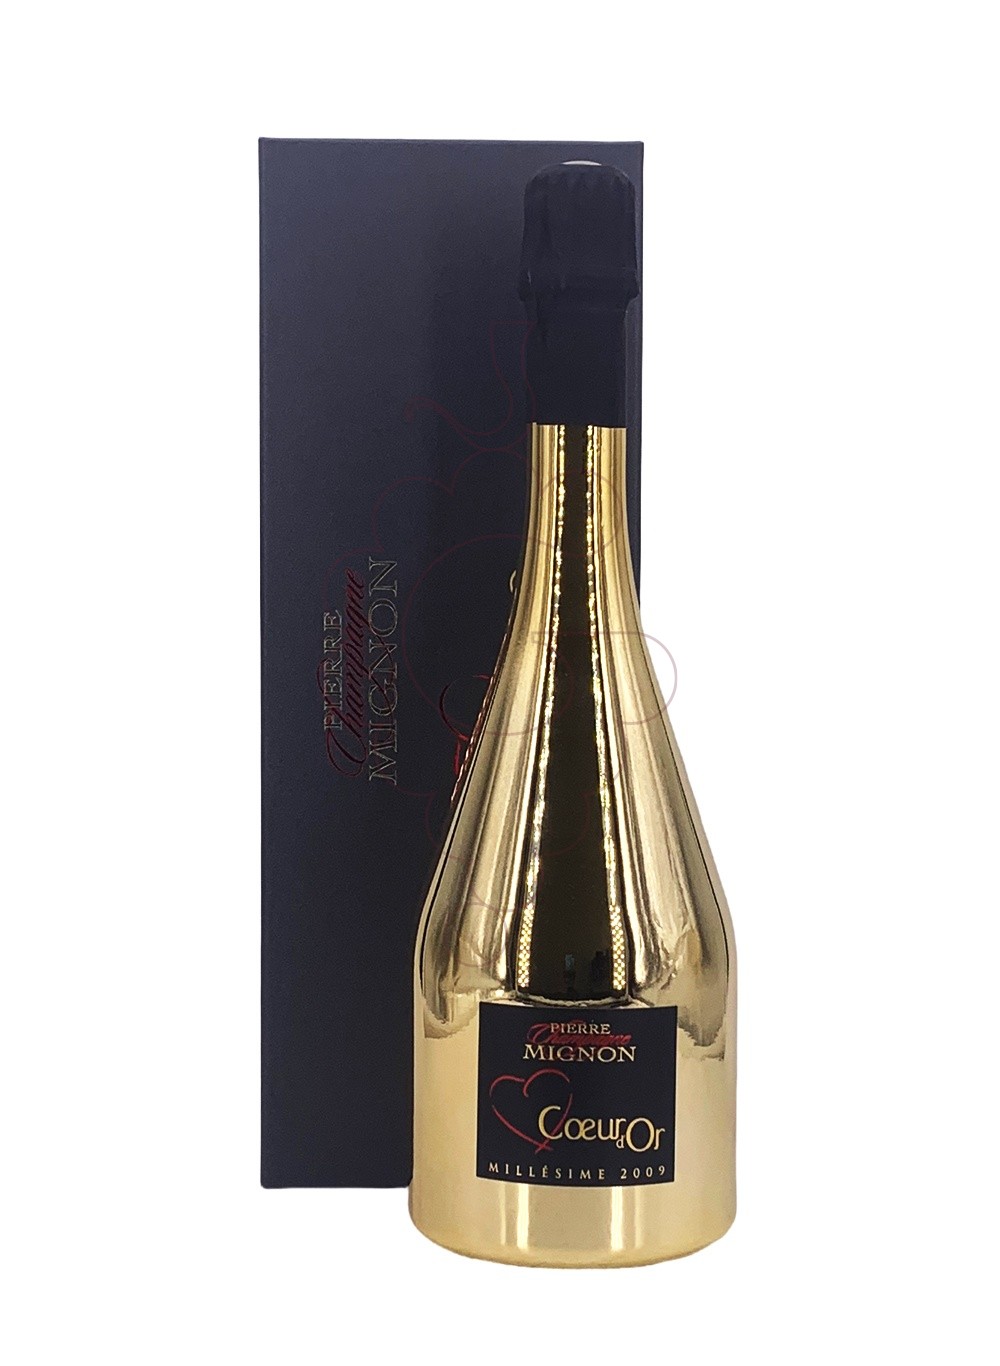 Photo Pierre Mignon Cuvée Coeur d'Or sparkling wine